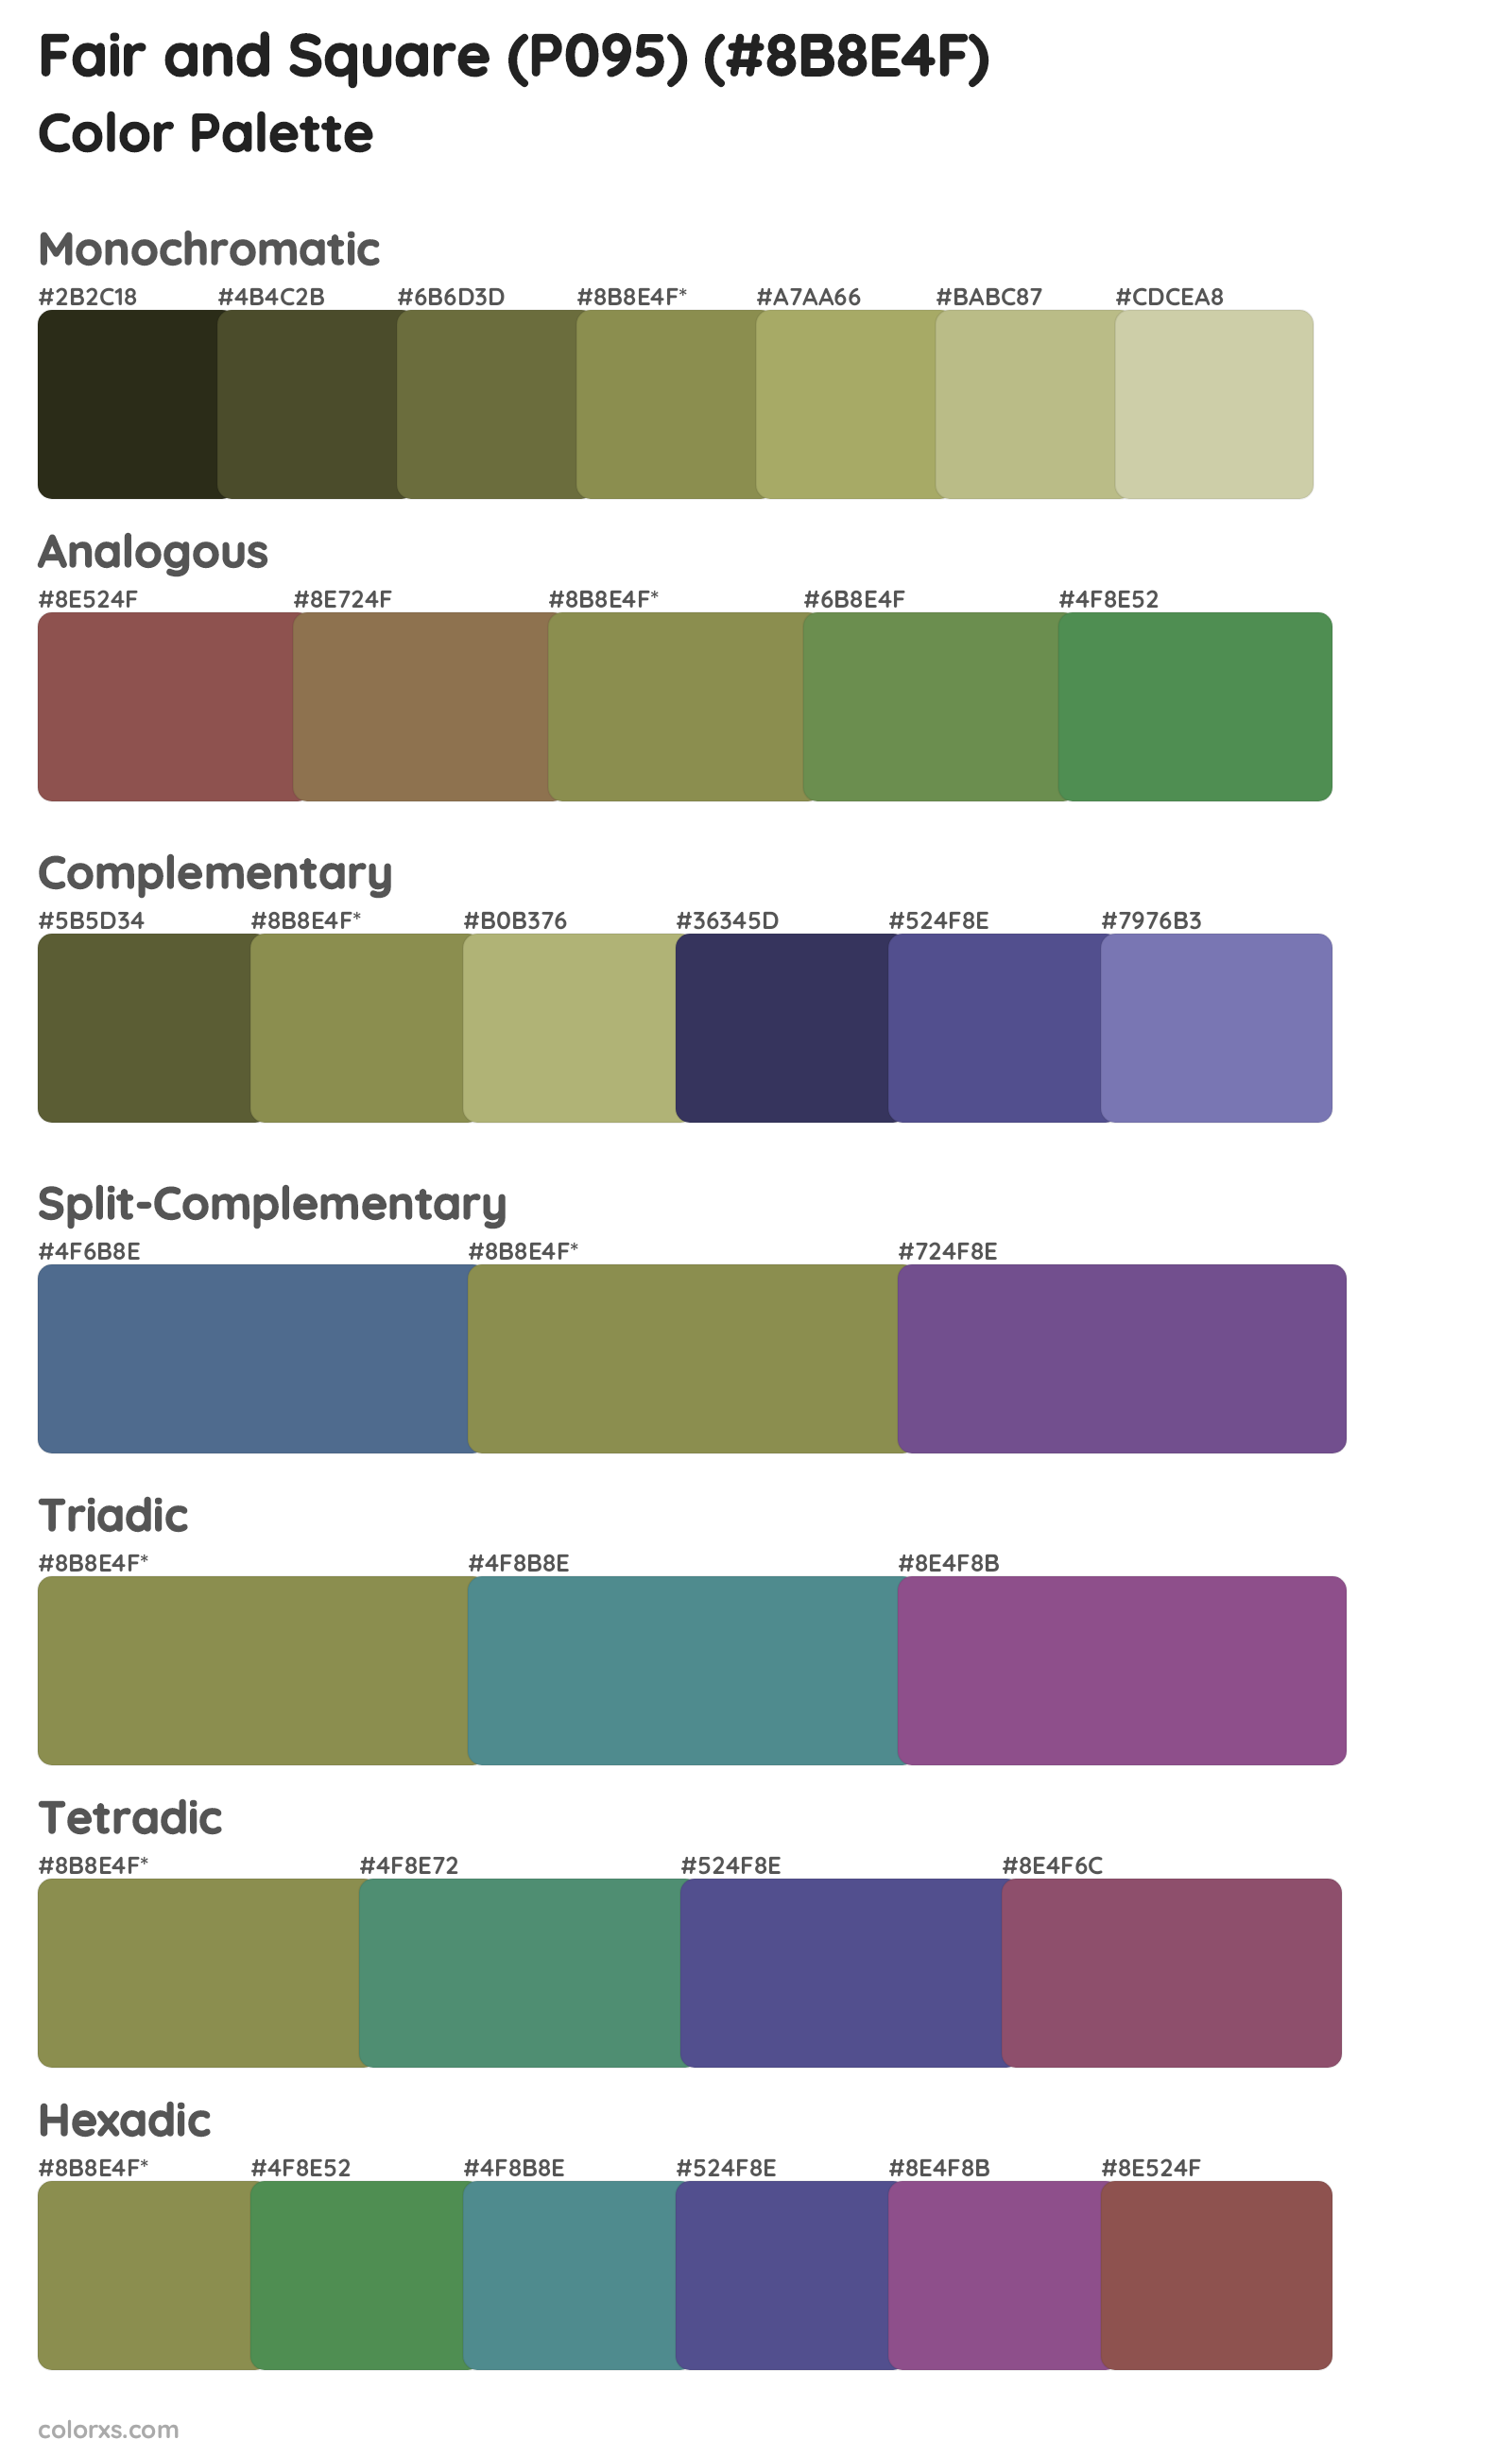 Fair and Square (P095) Color Scheme Palettes